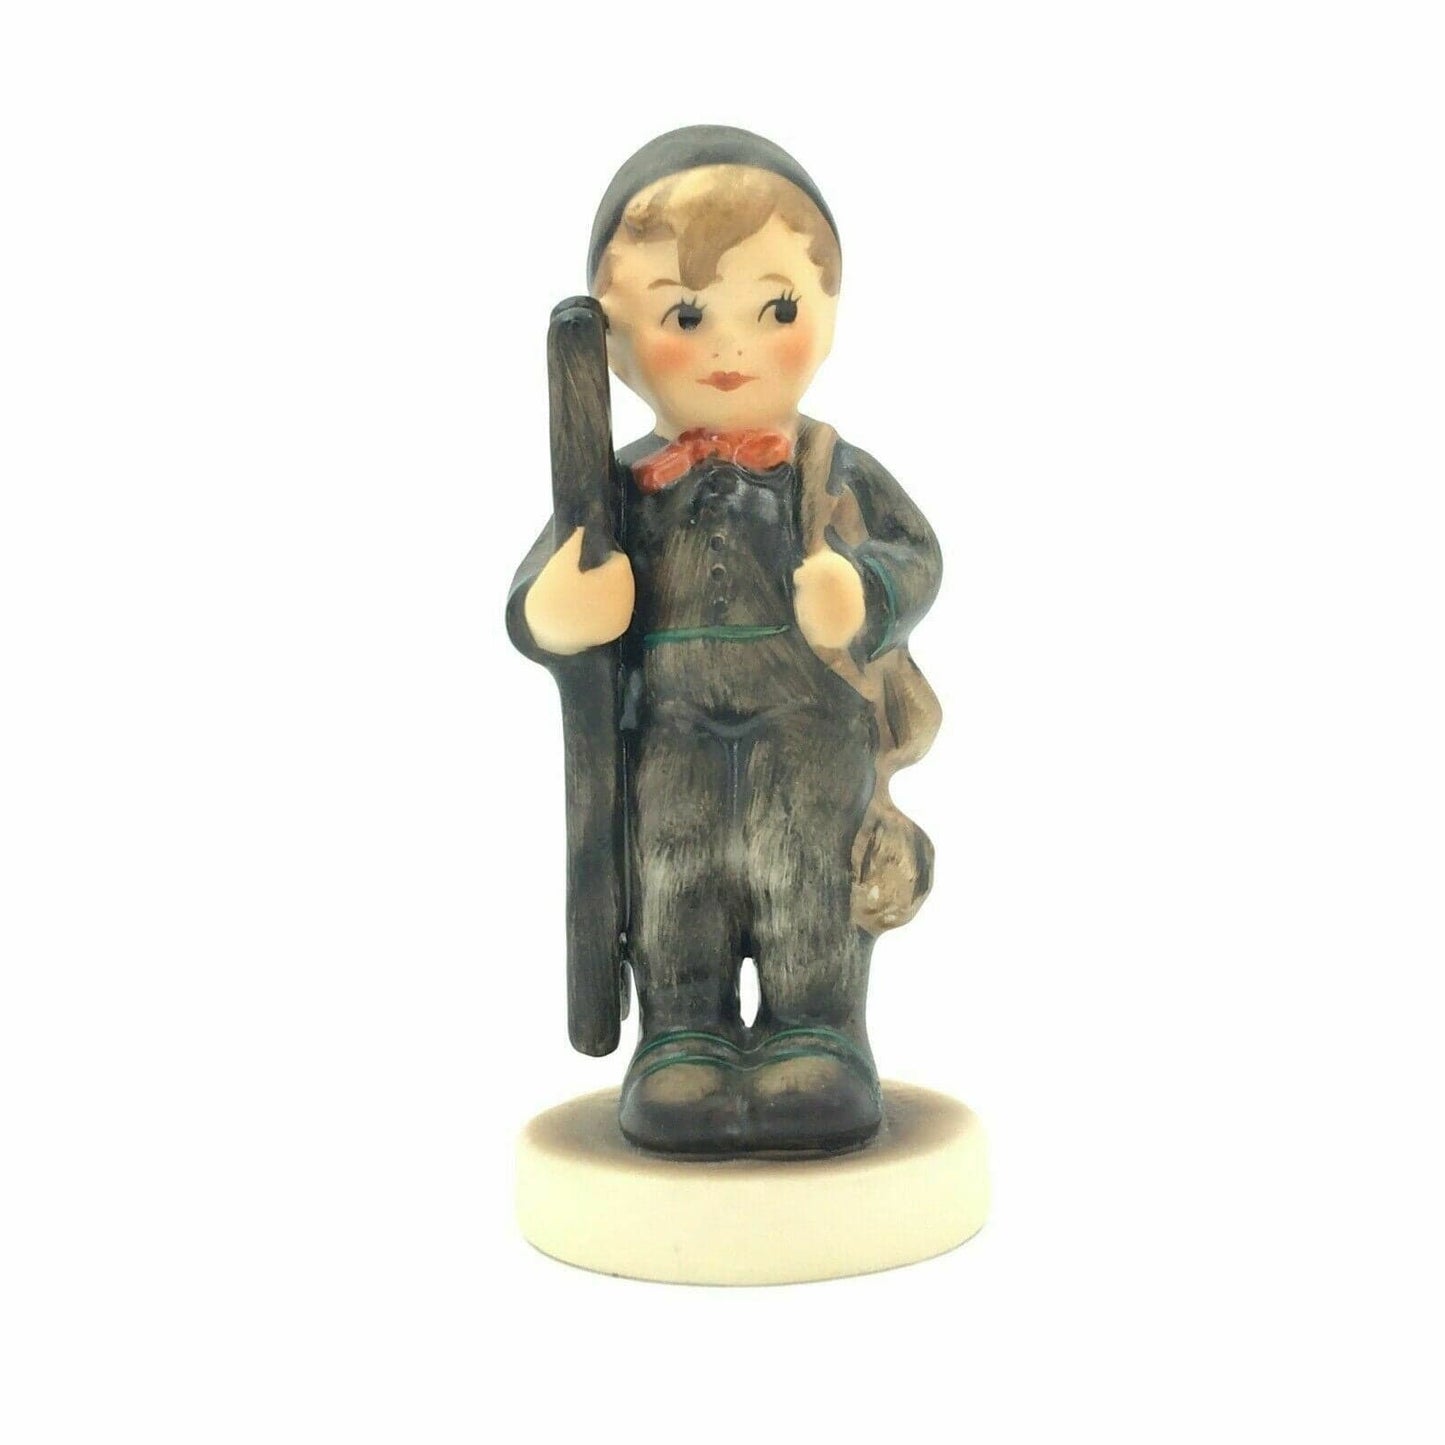 Vintage Hummel Chimney Sweep Boy With Ladder Figurine 4”